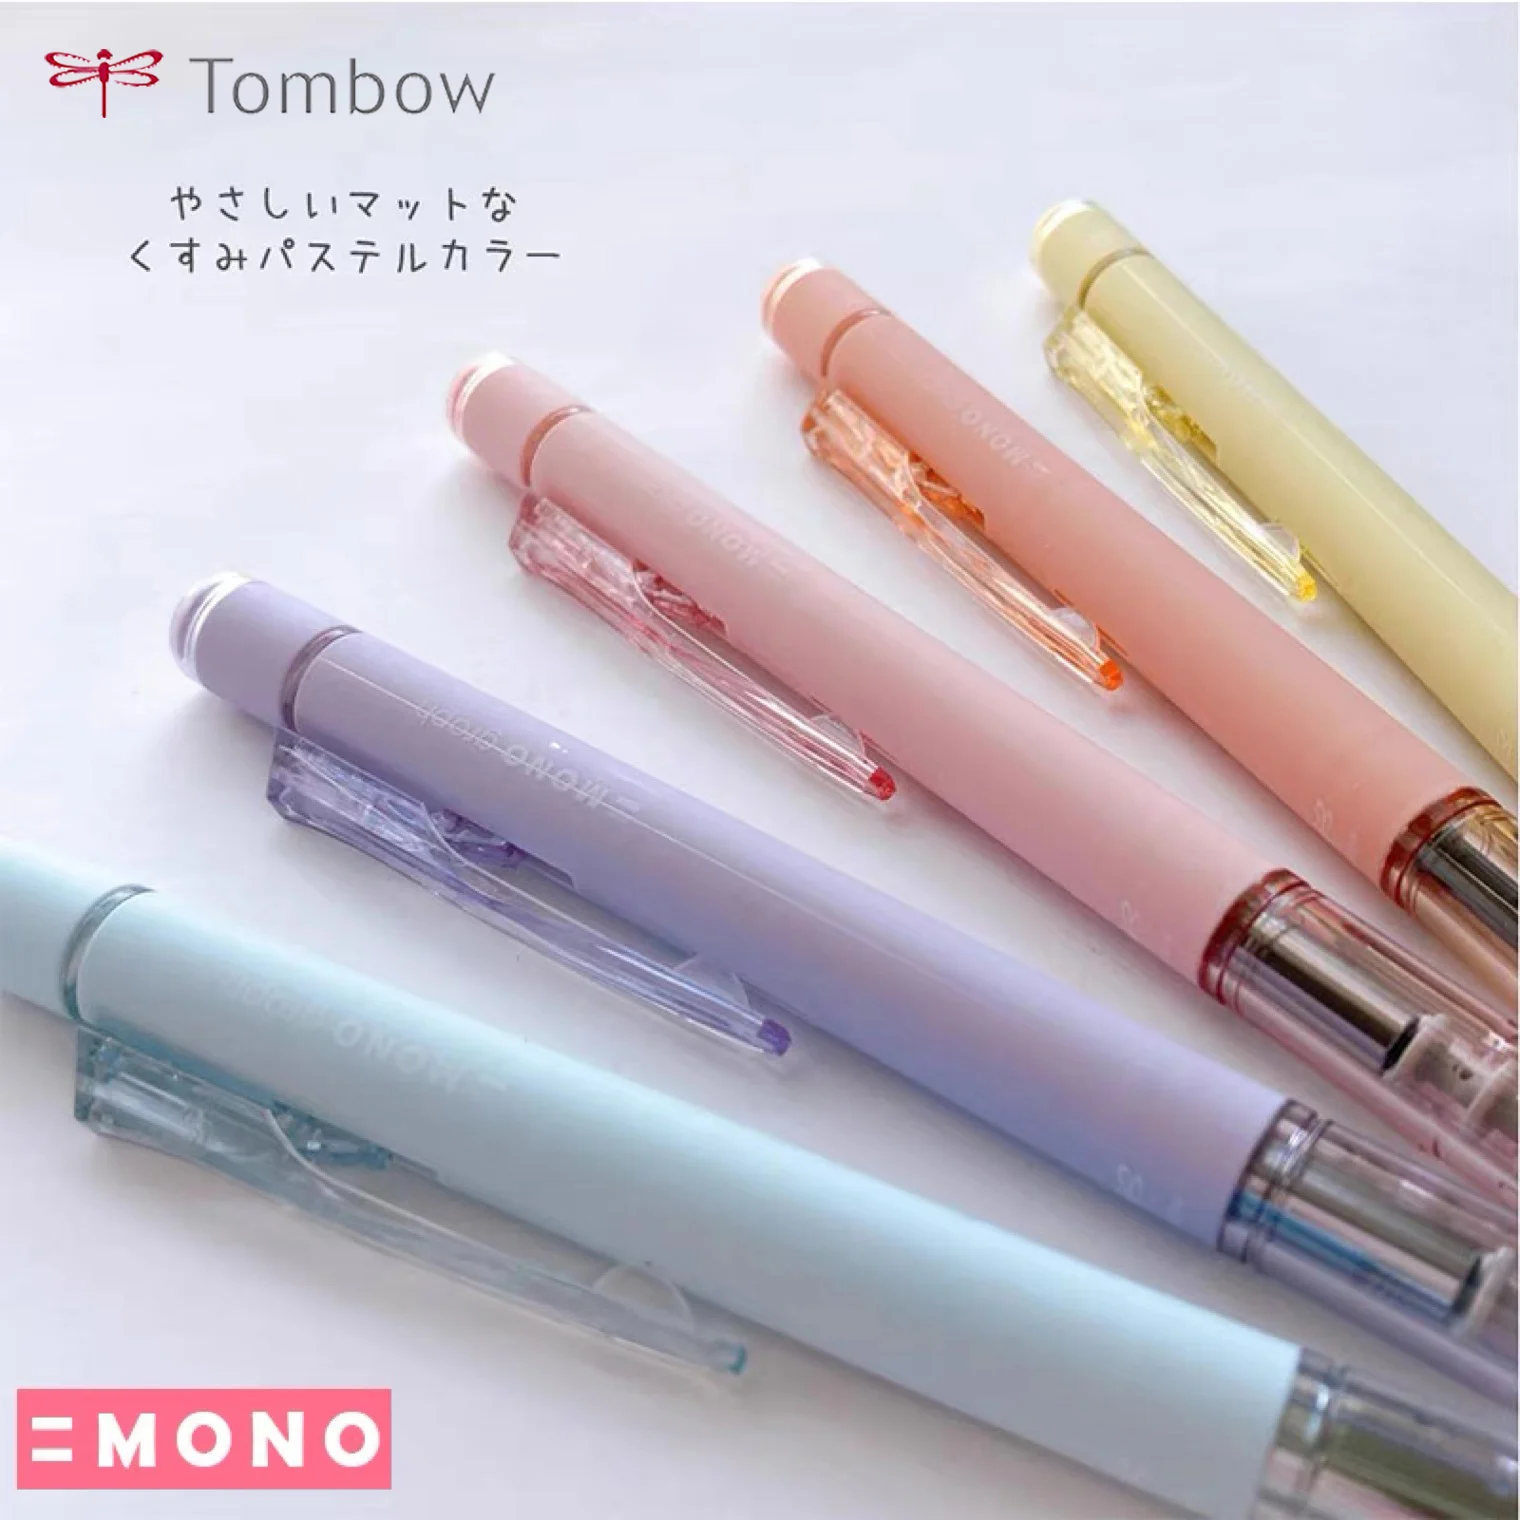 Японский Мономеханический карандаш Tombow Smoke Limited Shake Lead 0,5 мм для рисования, письма, школьные принадлежности, канцелярские принадлежности Lapices . ' - ' . 2